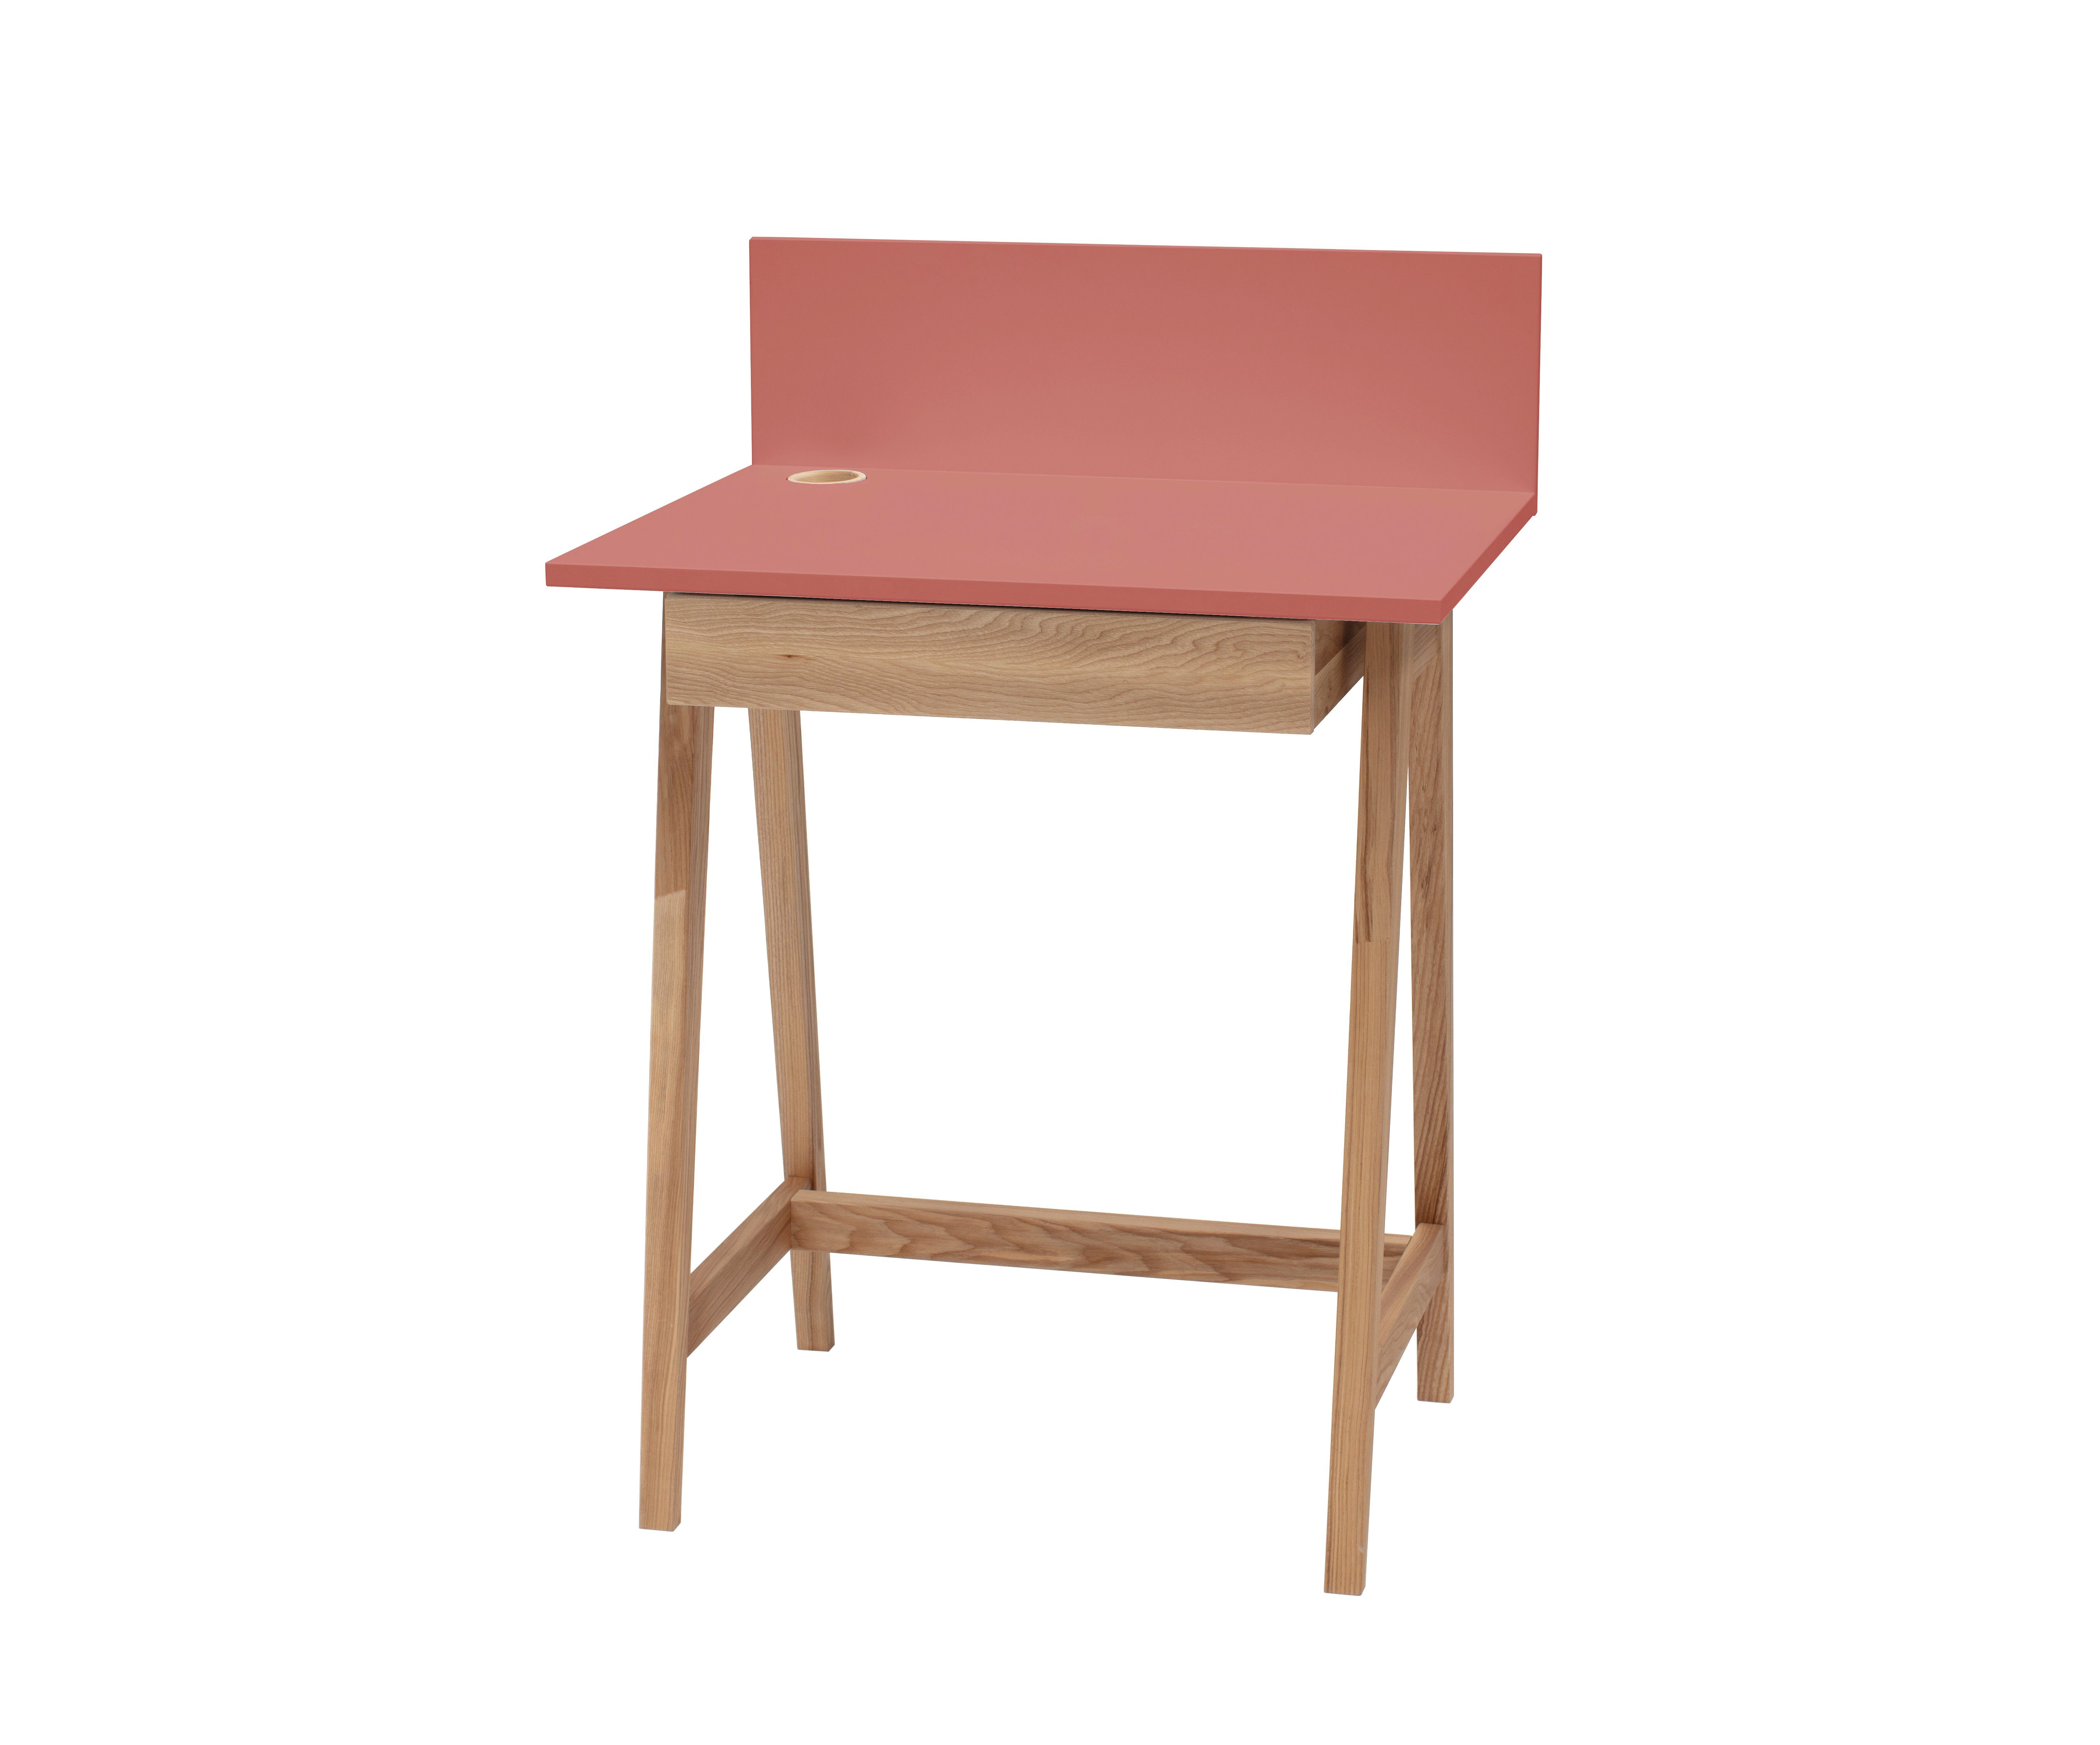 Siblo Schreibtisch Kinderschreibtisch Luke mit Schublade - Bunter Schreibtisch - minimalistisches Design - Kinderzimmer - MDF-Platte - Eschenholz (Kinderschreibtisch Luke mit Schublade) Rosa